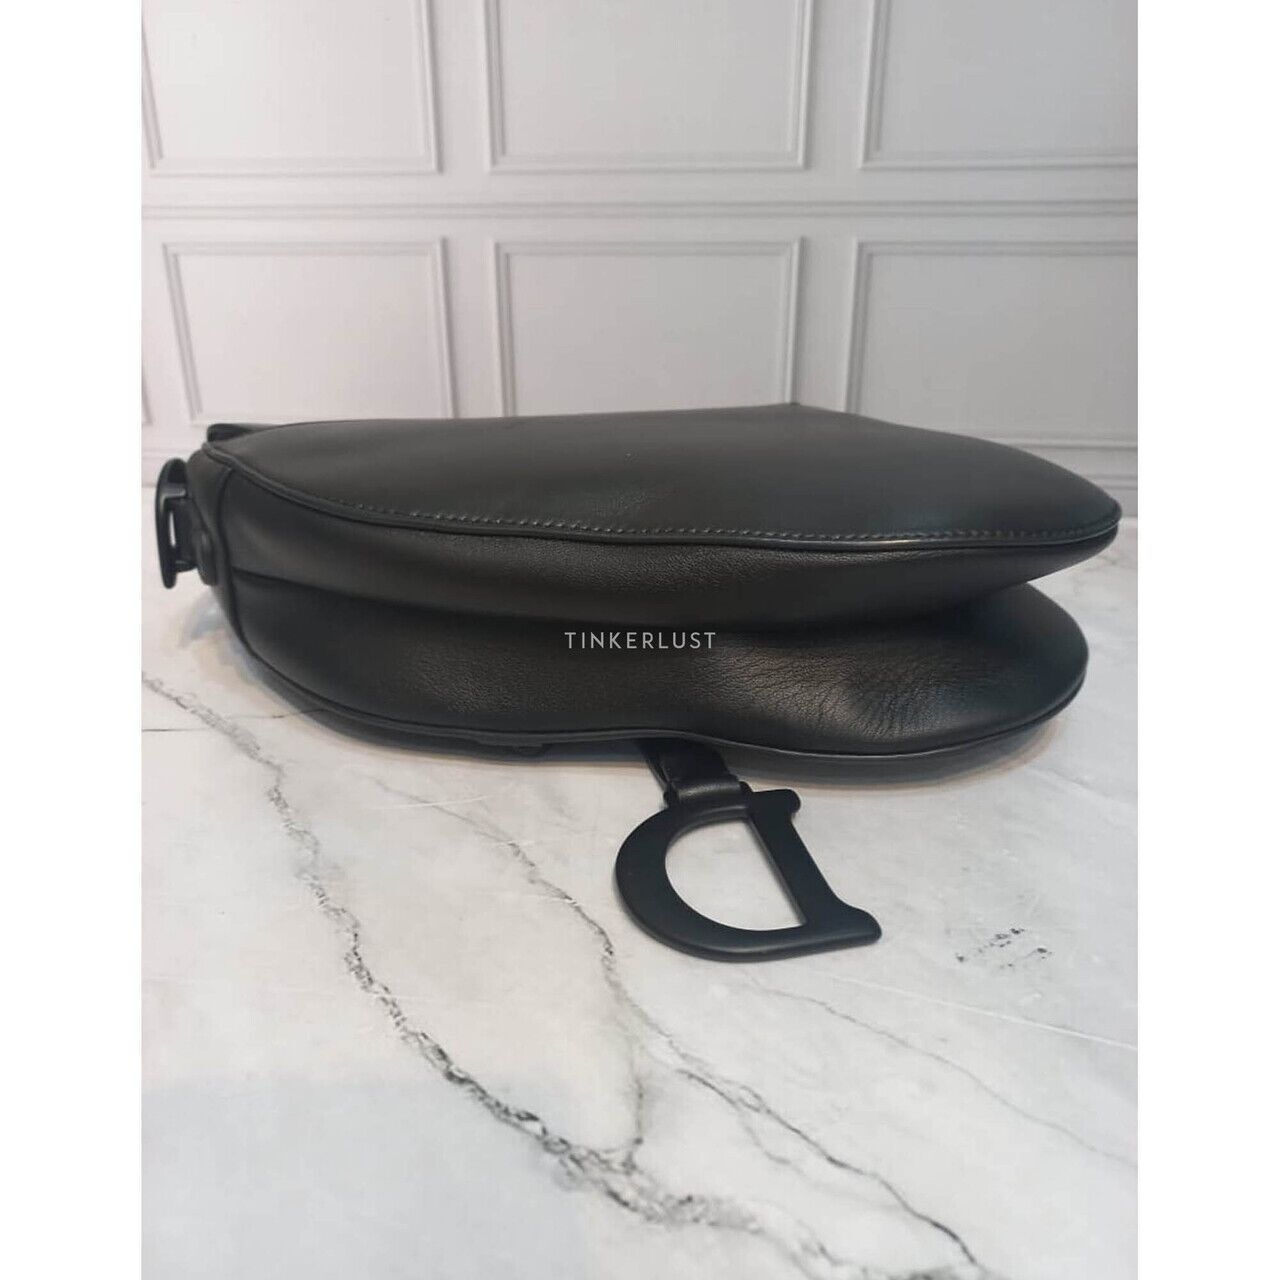 Christian Dior Saddle Medium 3D Floral Black Lambskin 2019 Shoulder Bag